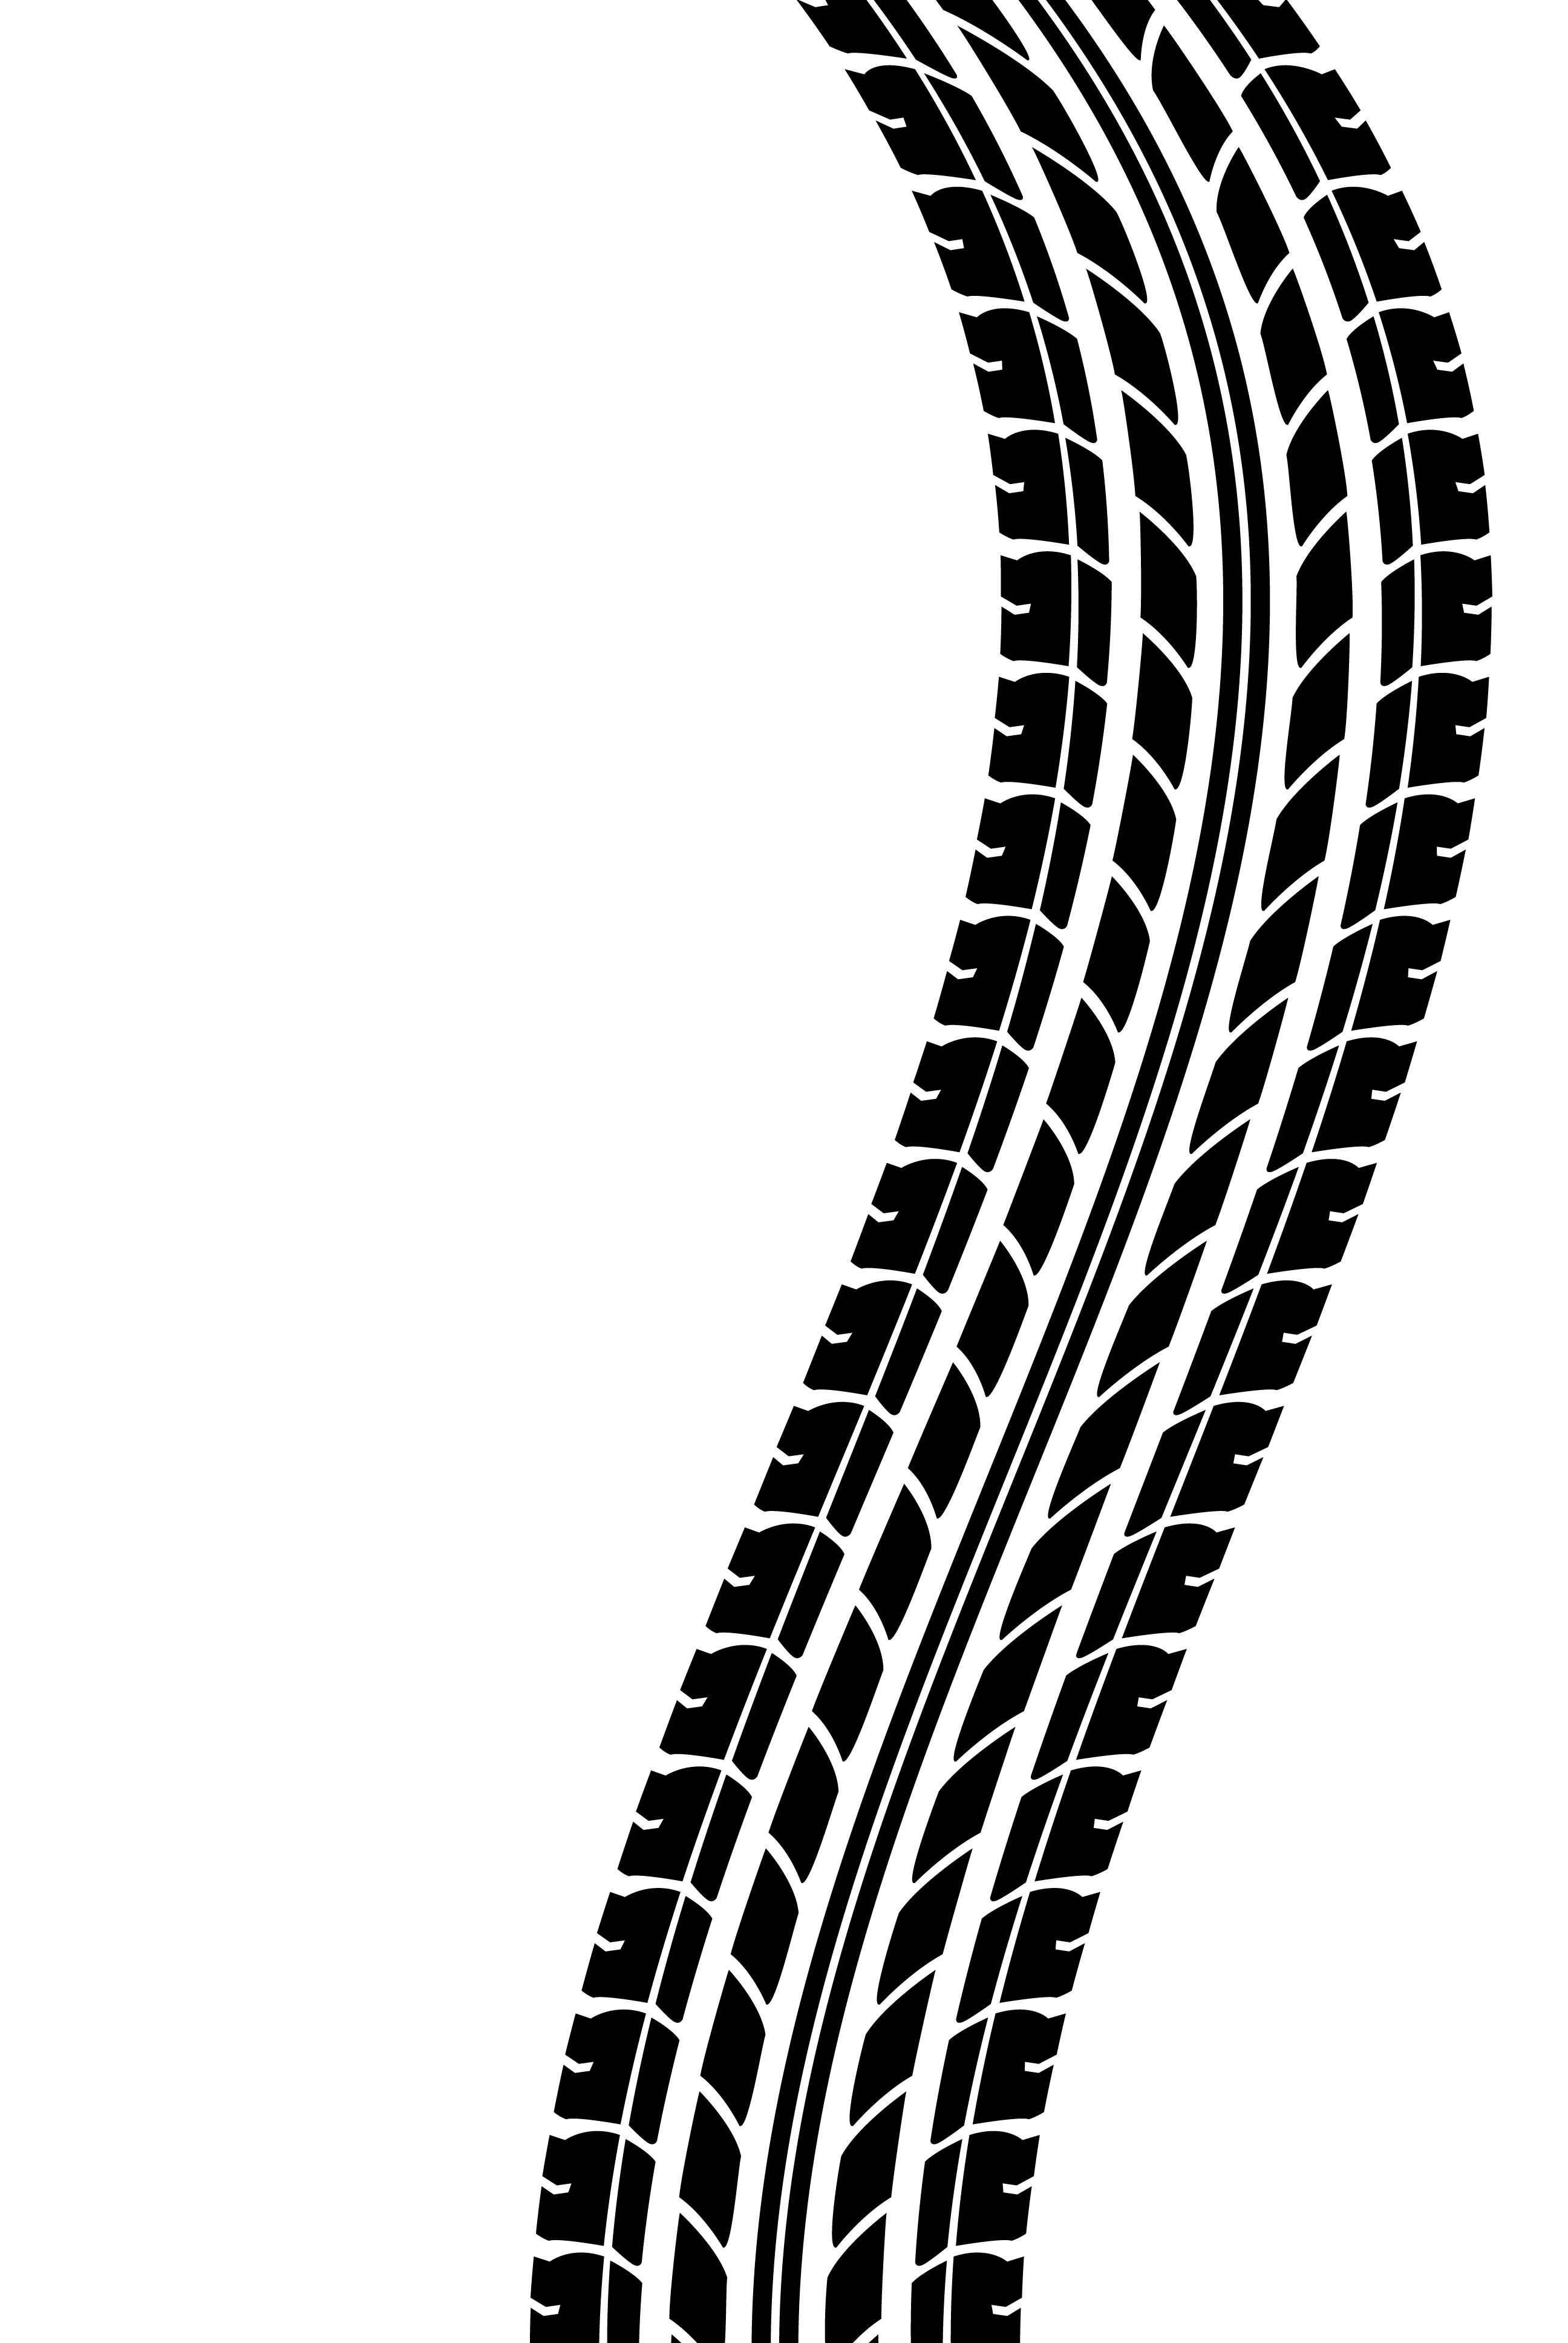 ... tire tracks - clip art il